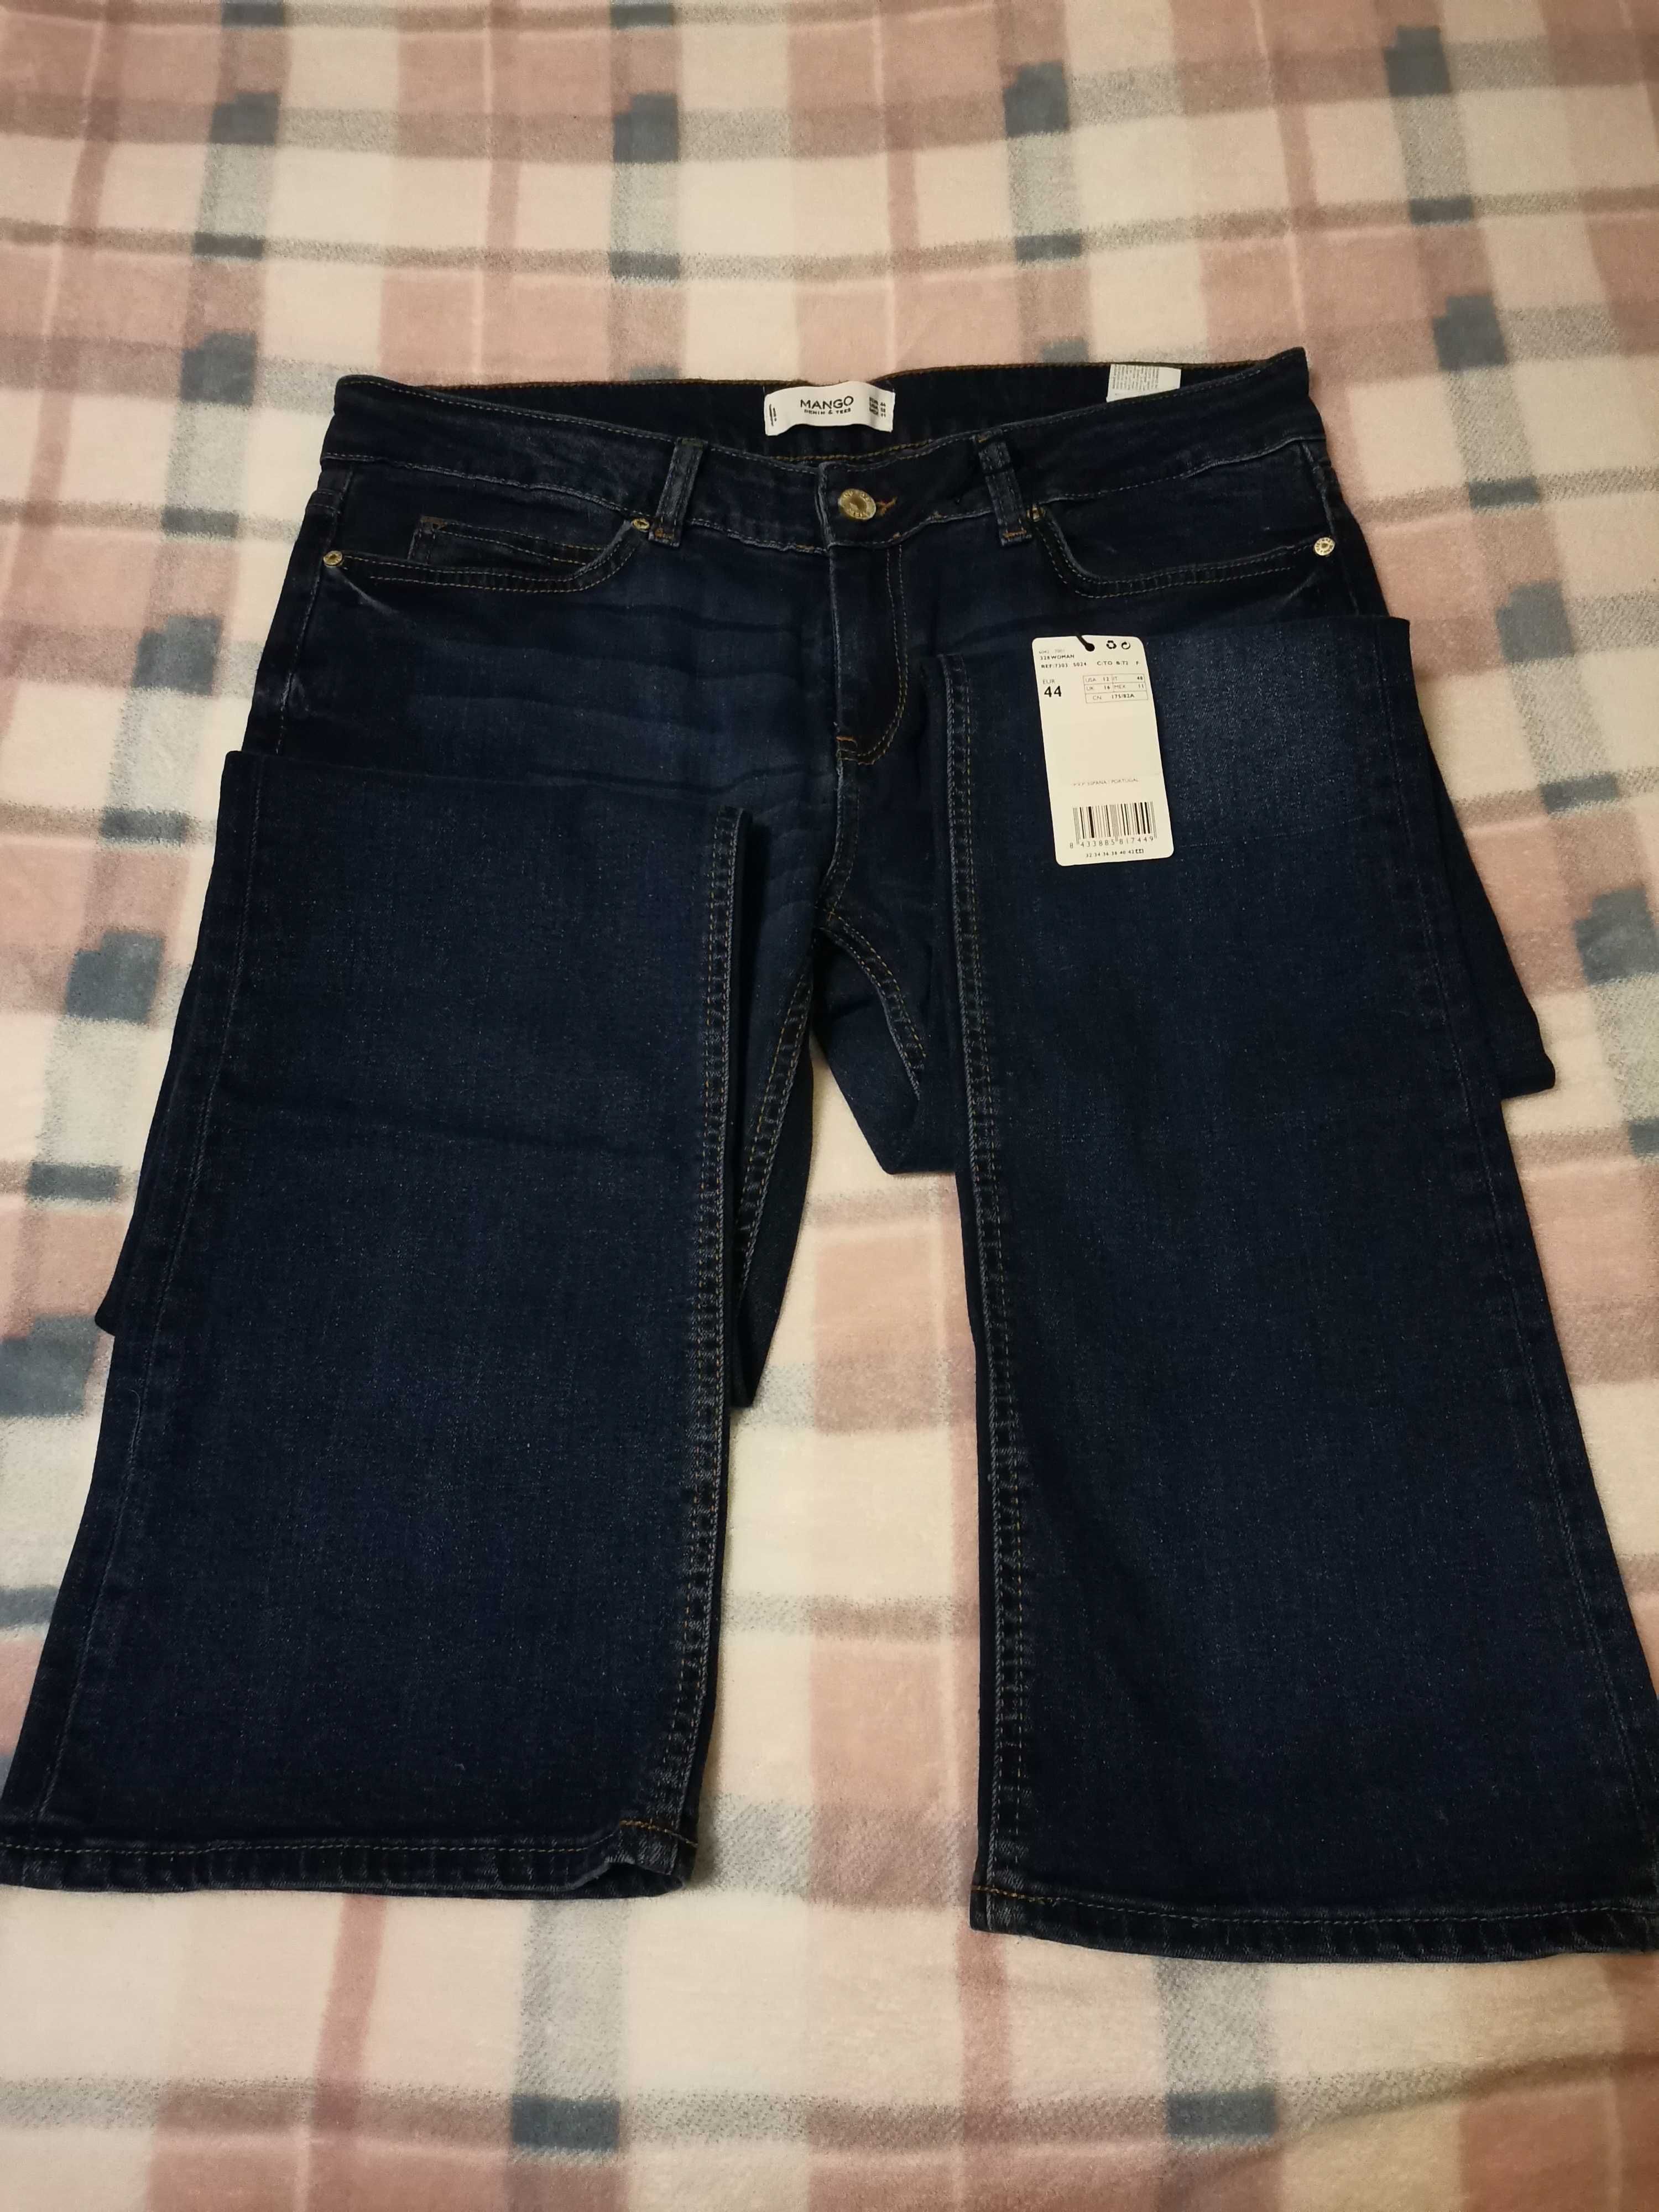 Calças de ganga/Jeans Mango azul escuro com corte direito